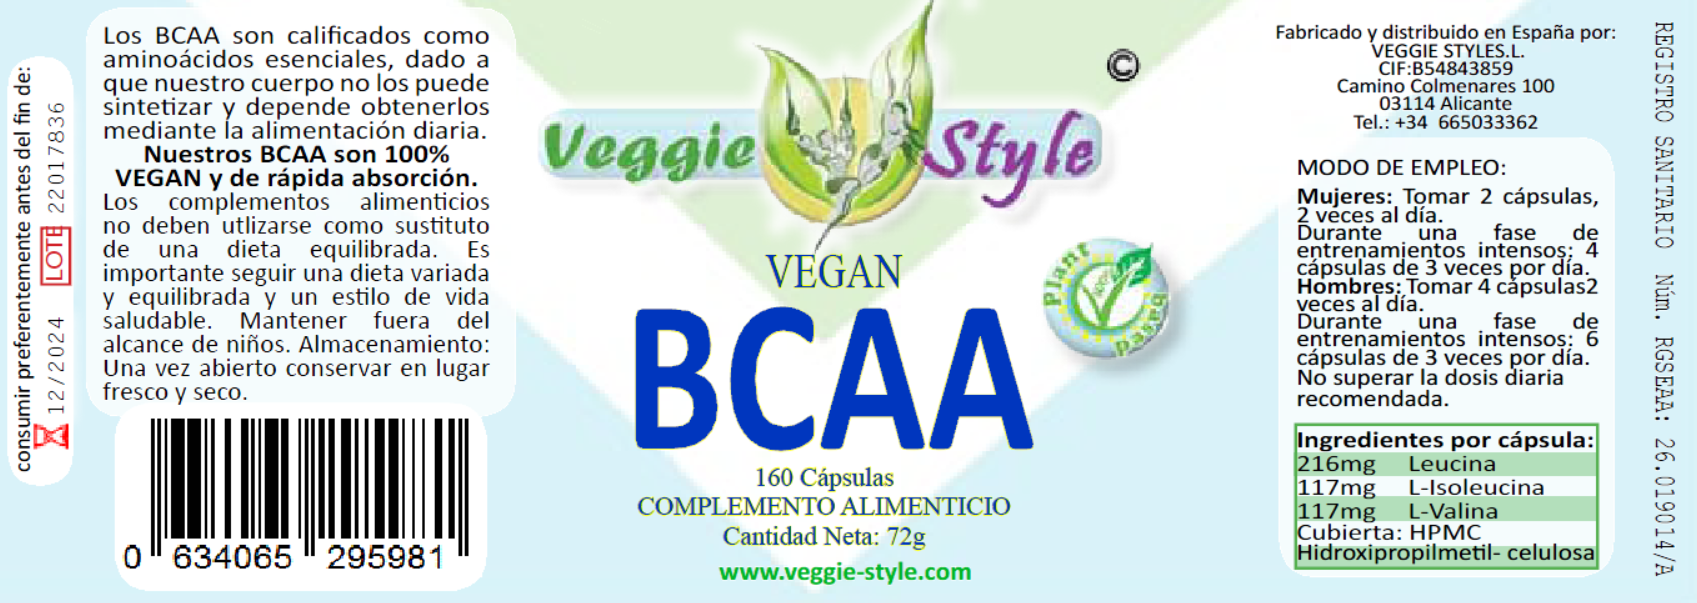 Veggie-Style-Vegan-BCAA